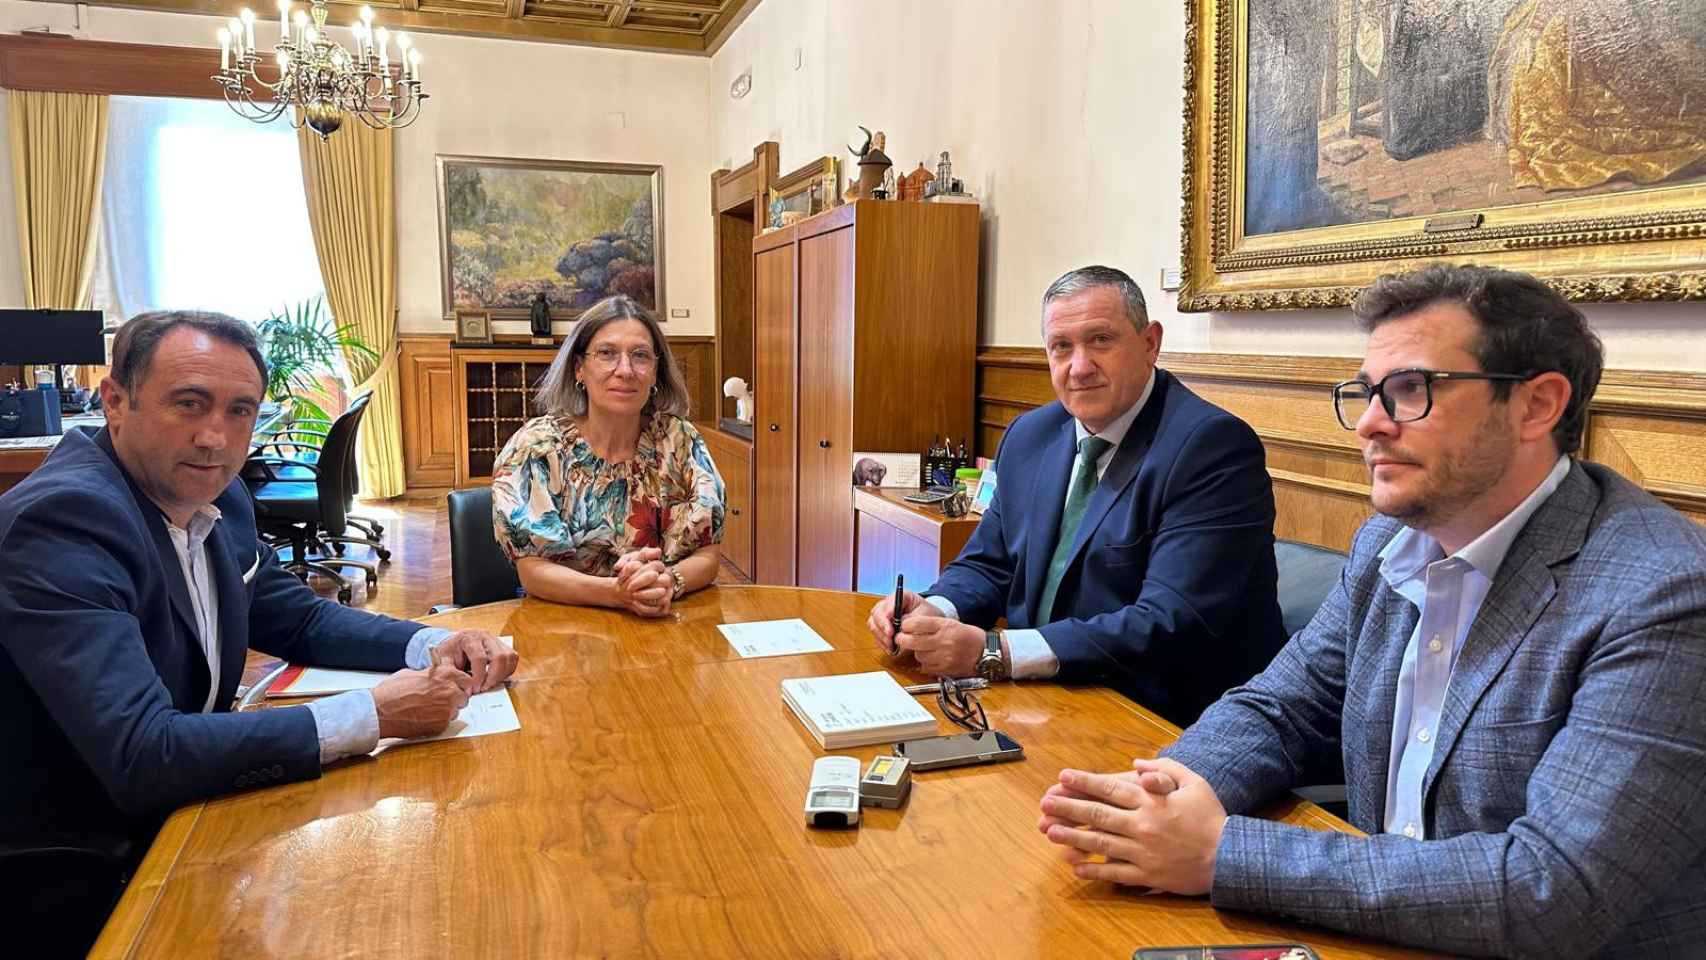 Reunión de la Diputación de Zamora con la Cámara de Miranda do Douro